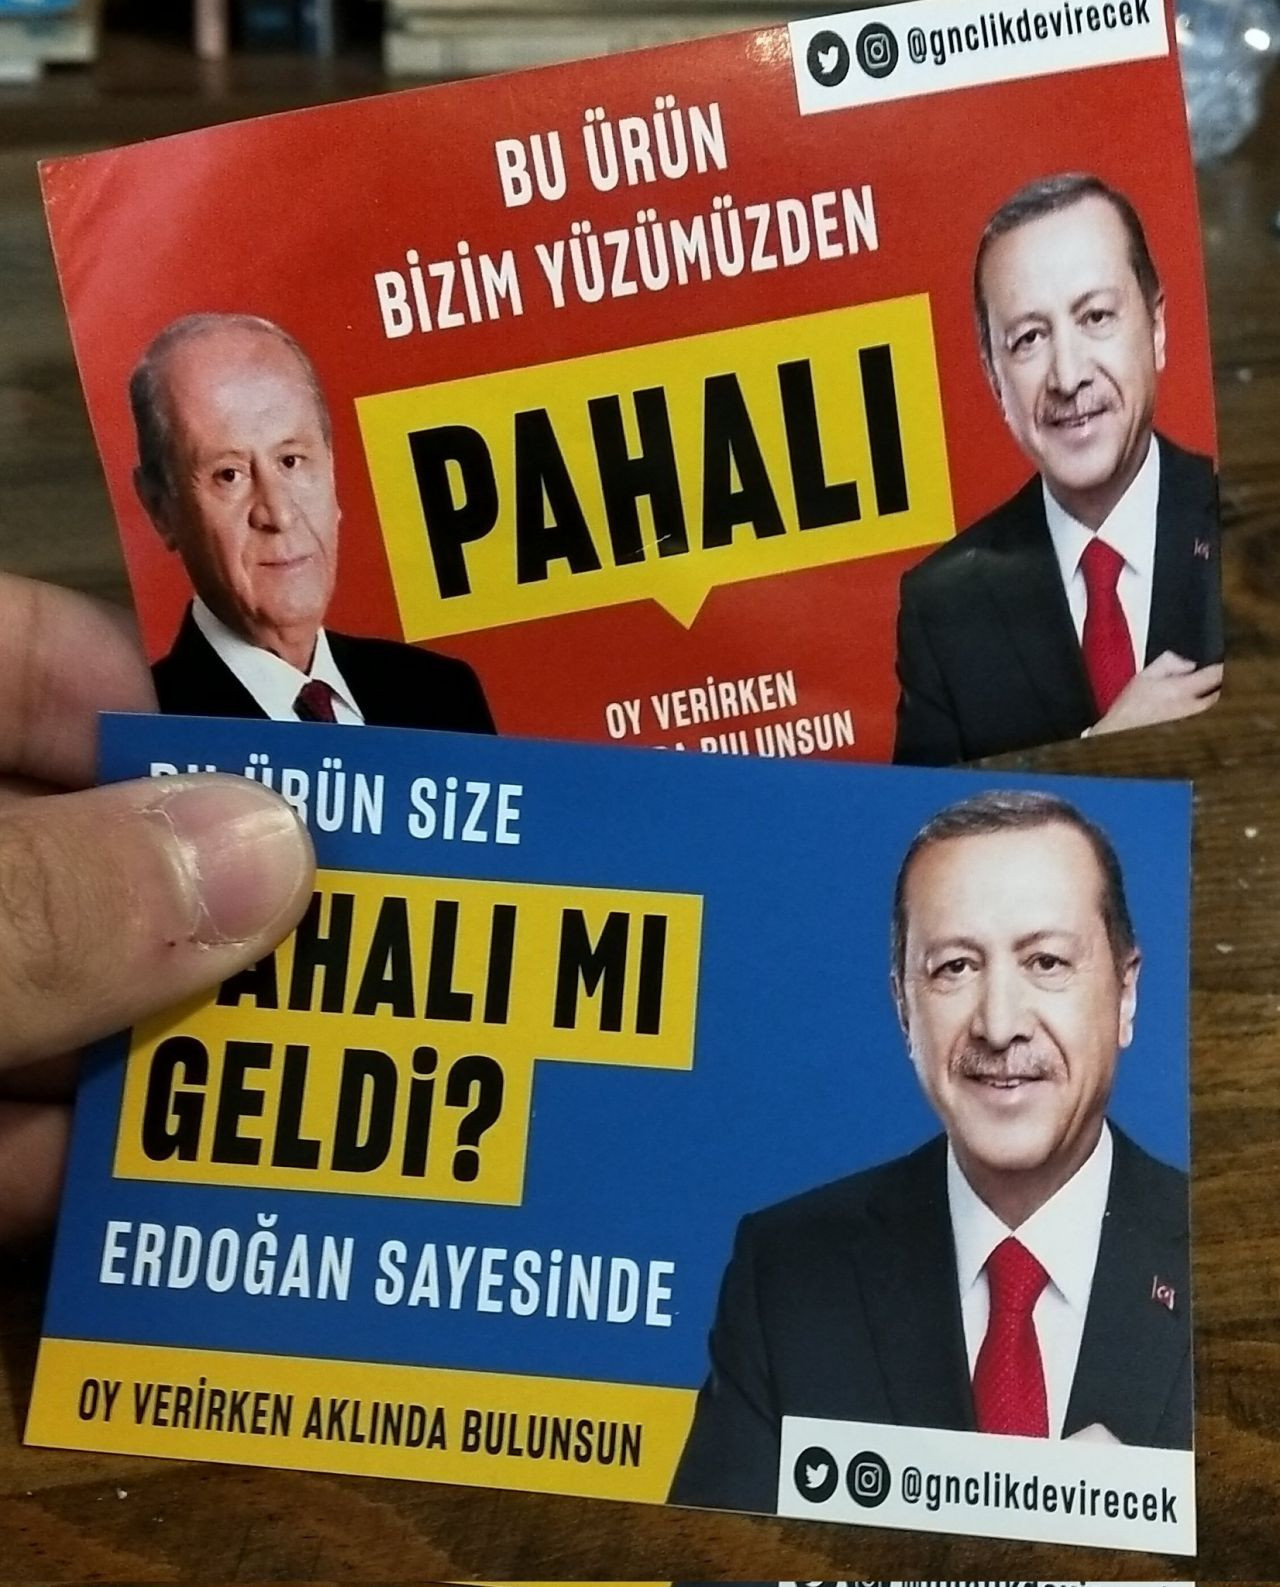 Market rafında Erdoğan'lı etiket: 'Bu ürün pahalı geldiyse...' - Sayfa 2